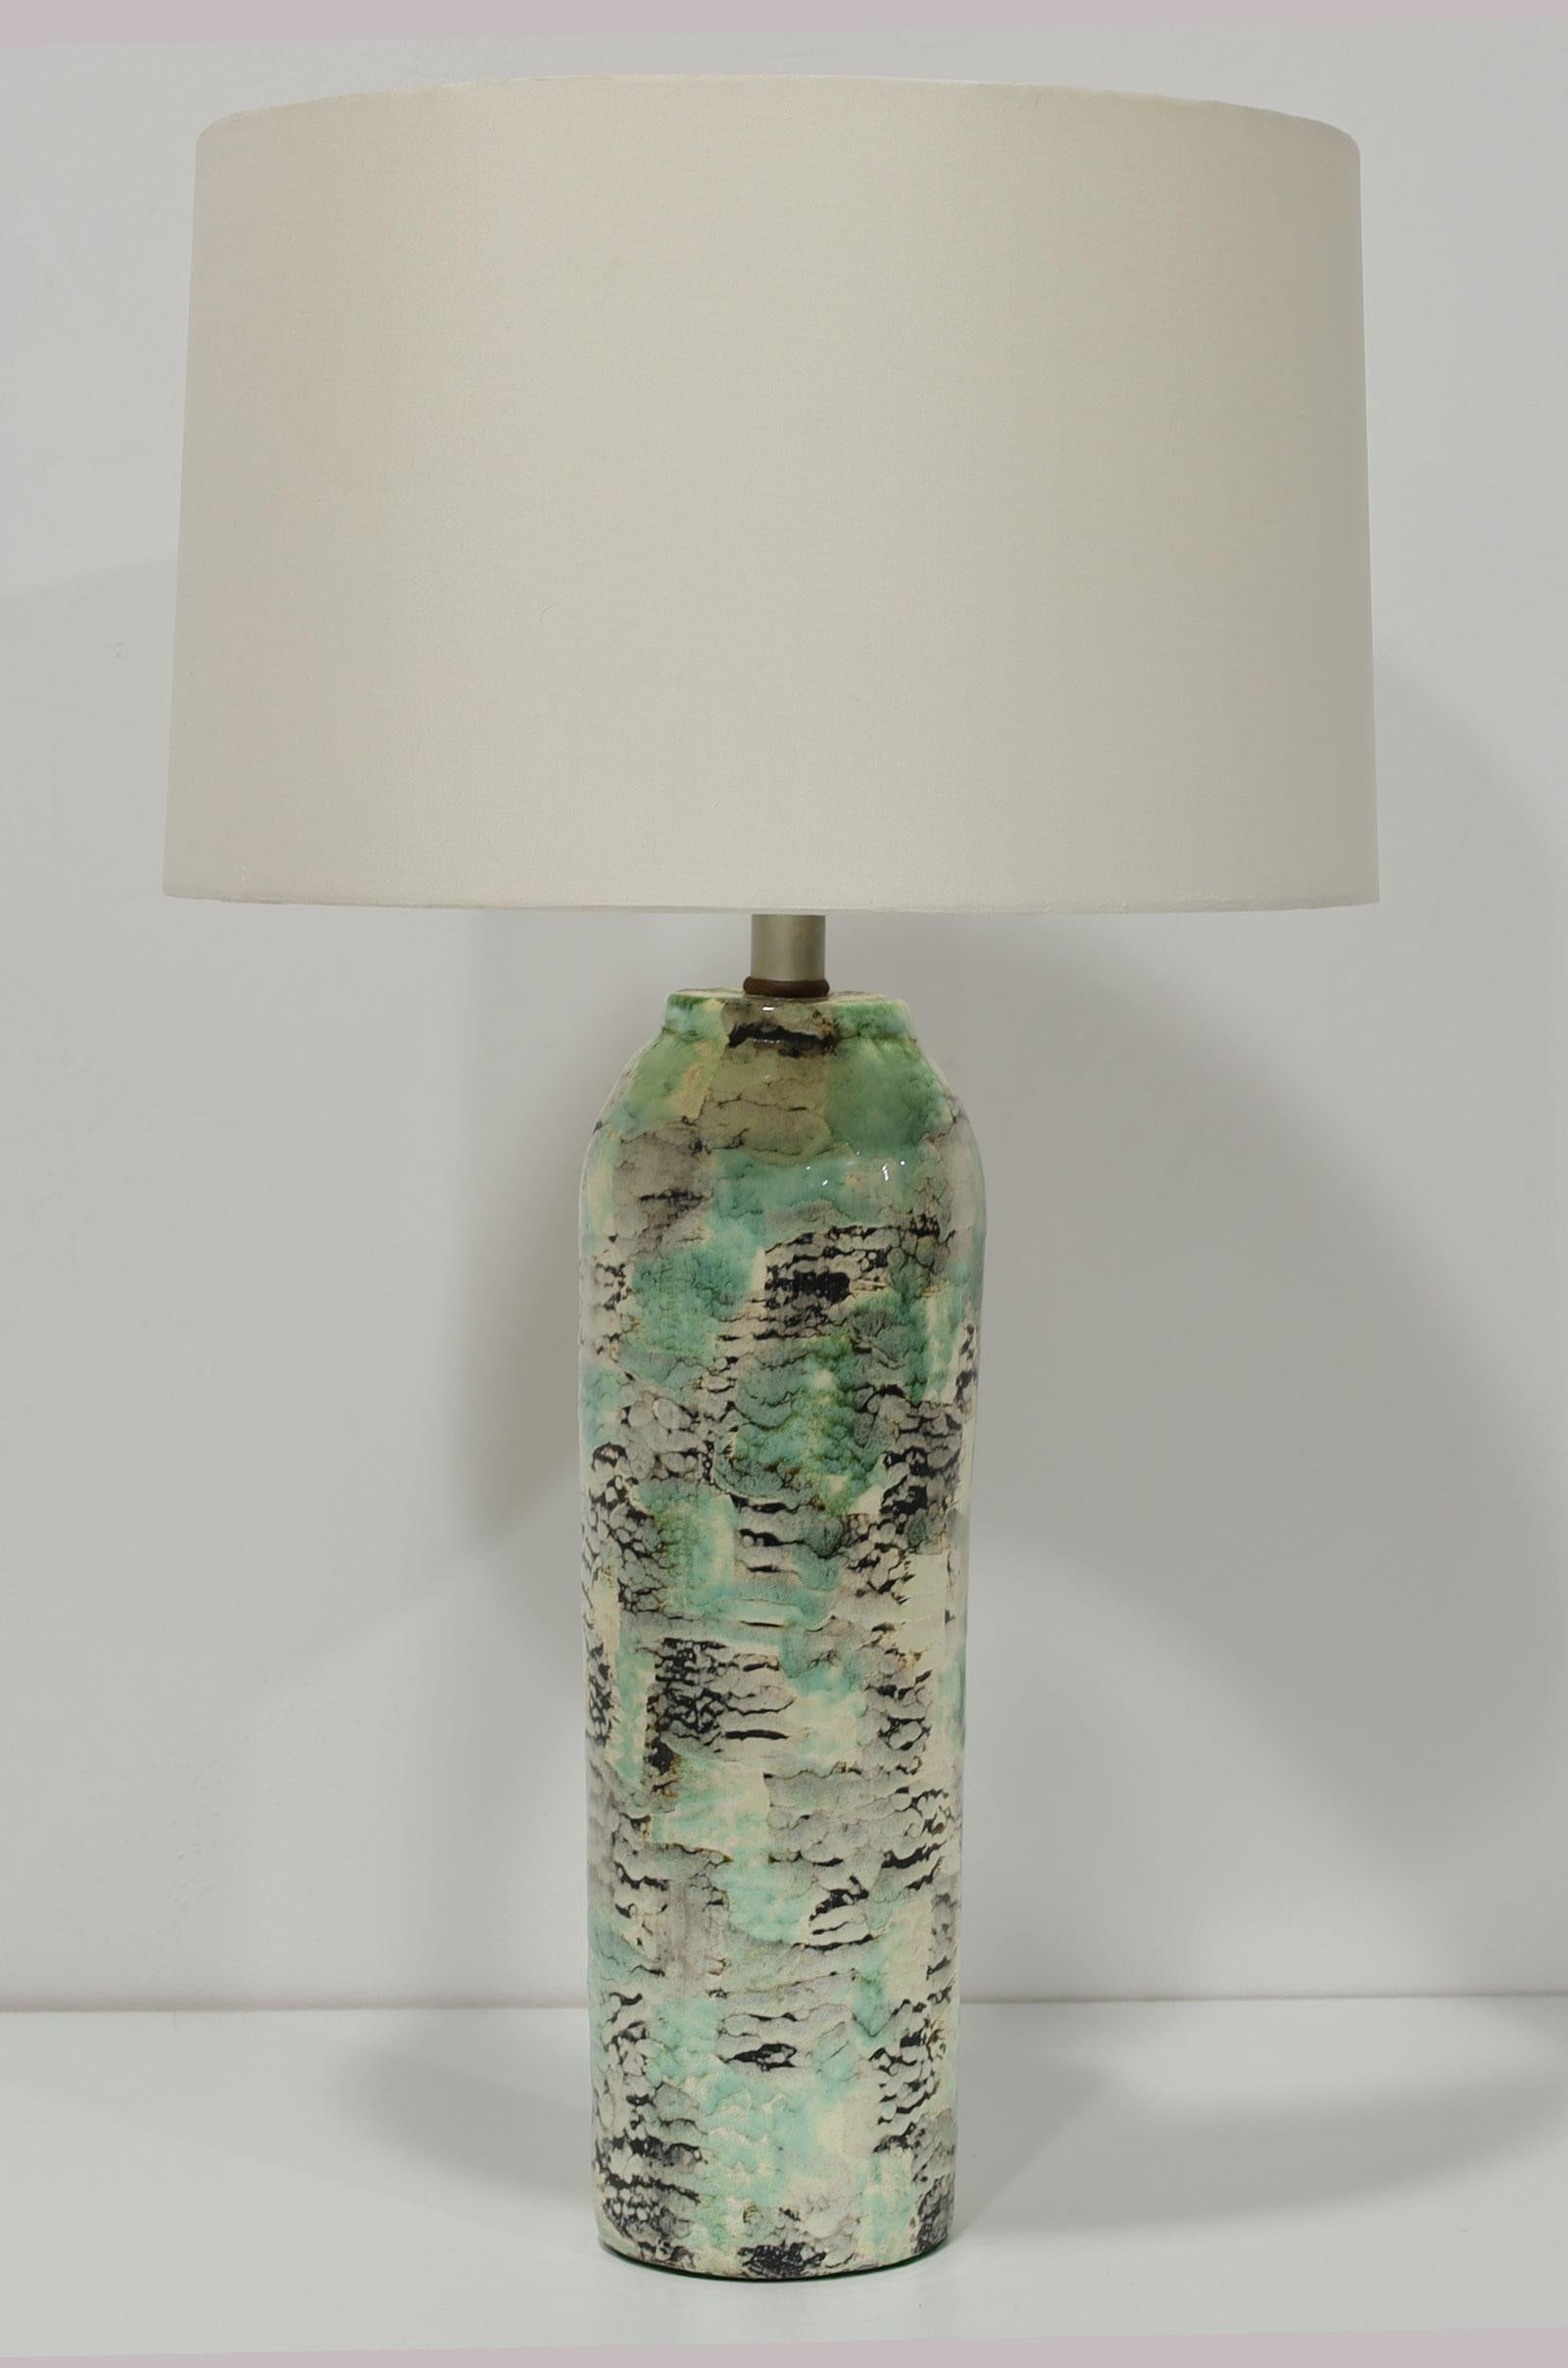 Dies ist eine einzigartige Lampe von Kelby. Die Lampe hat eine runde Trommelform mit einem abstrakten Design in Grün, Schwarz und Creme oder Off-White. Die Höhe der Keramik ist 17,5